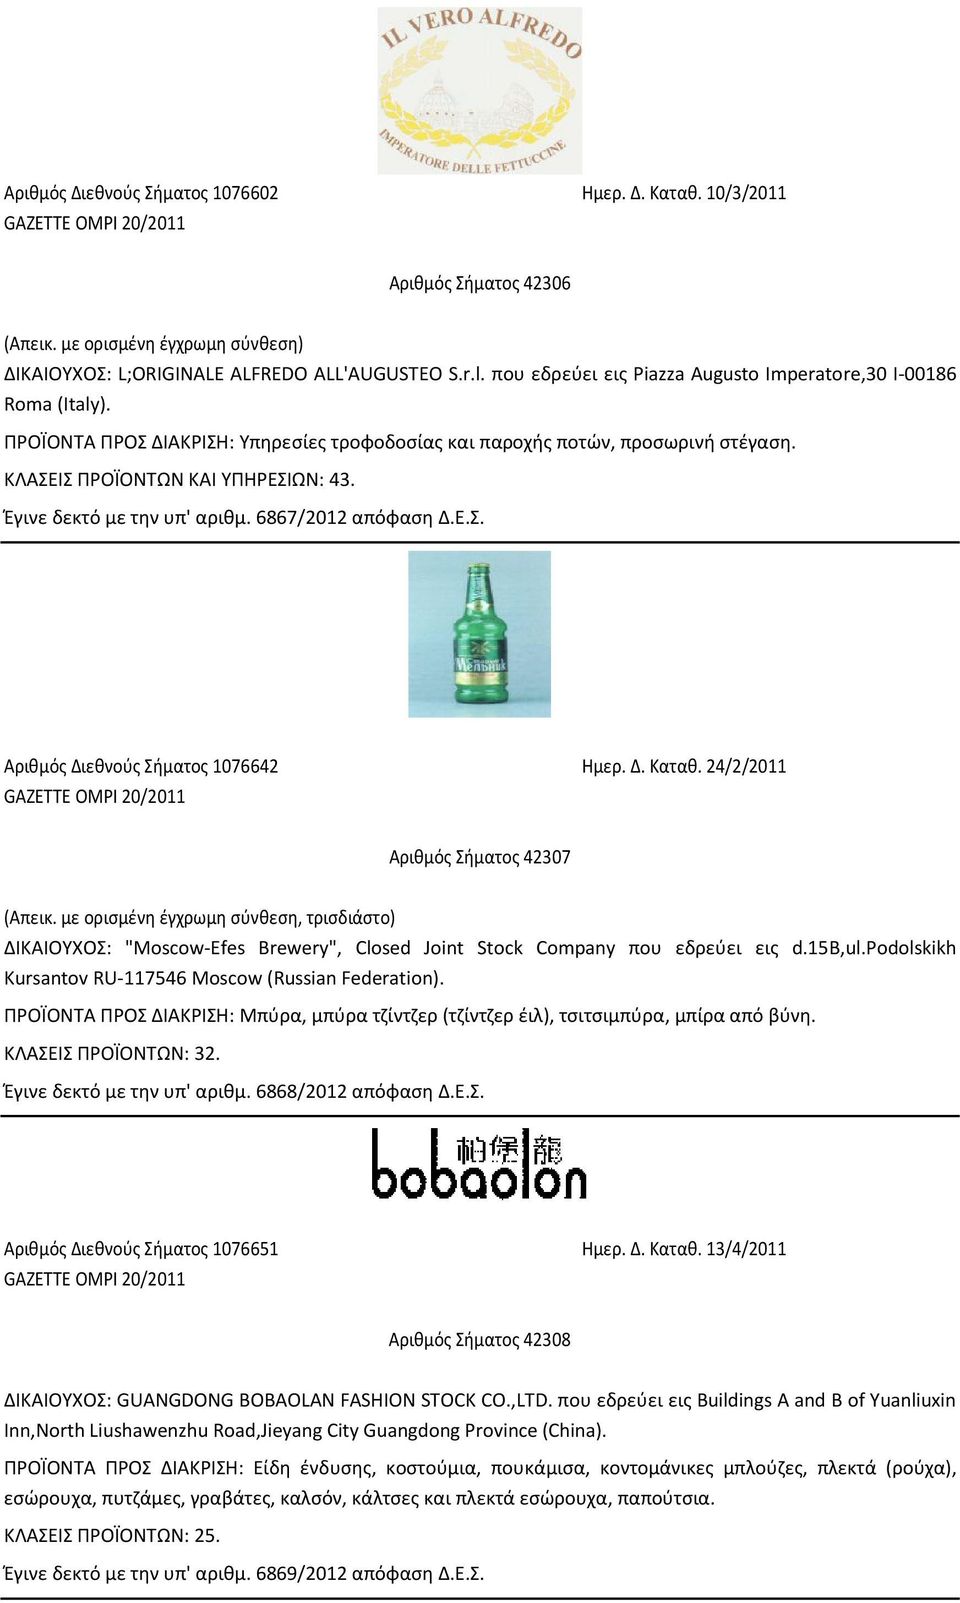 Δ. Καταθ. 24/2/2011 Αριθµός Σήµατος 42307 (Απεικ. με ορισμένη έγχρωμη σύνθεση, τρισδιάστο) ΔΙΚΑΙΟΥΧΟΣ: "Moscow-Efes Brewery", Closed Joint Stock Company που εδρεύει εις d.15b,ul.